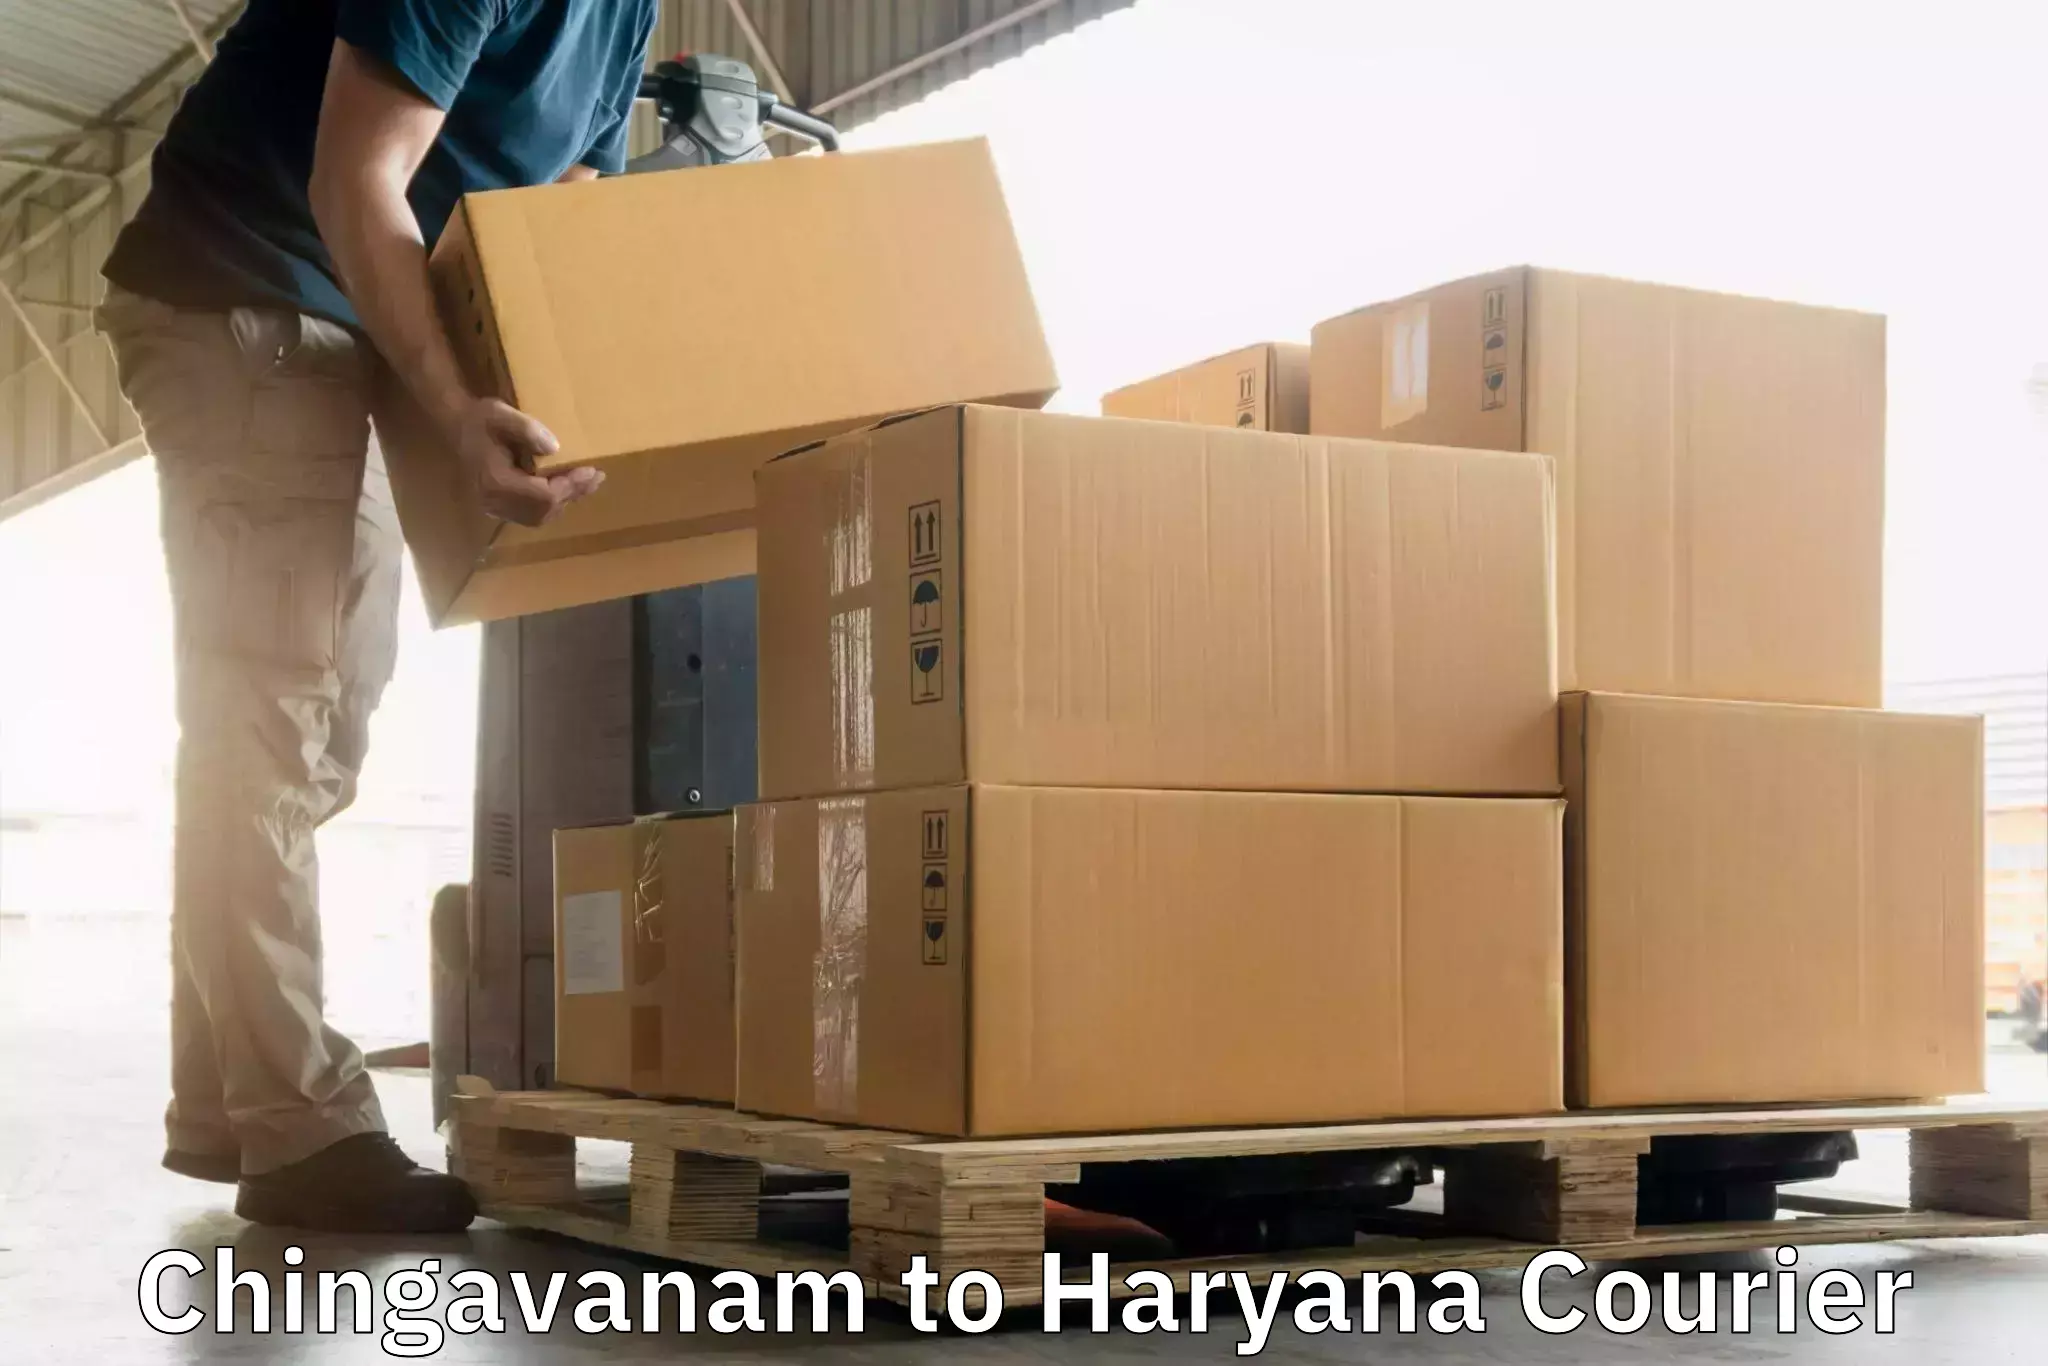 High-capacity shipping options in Chingavanam to Gurugram